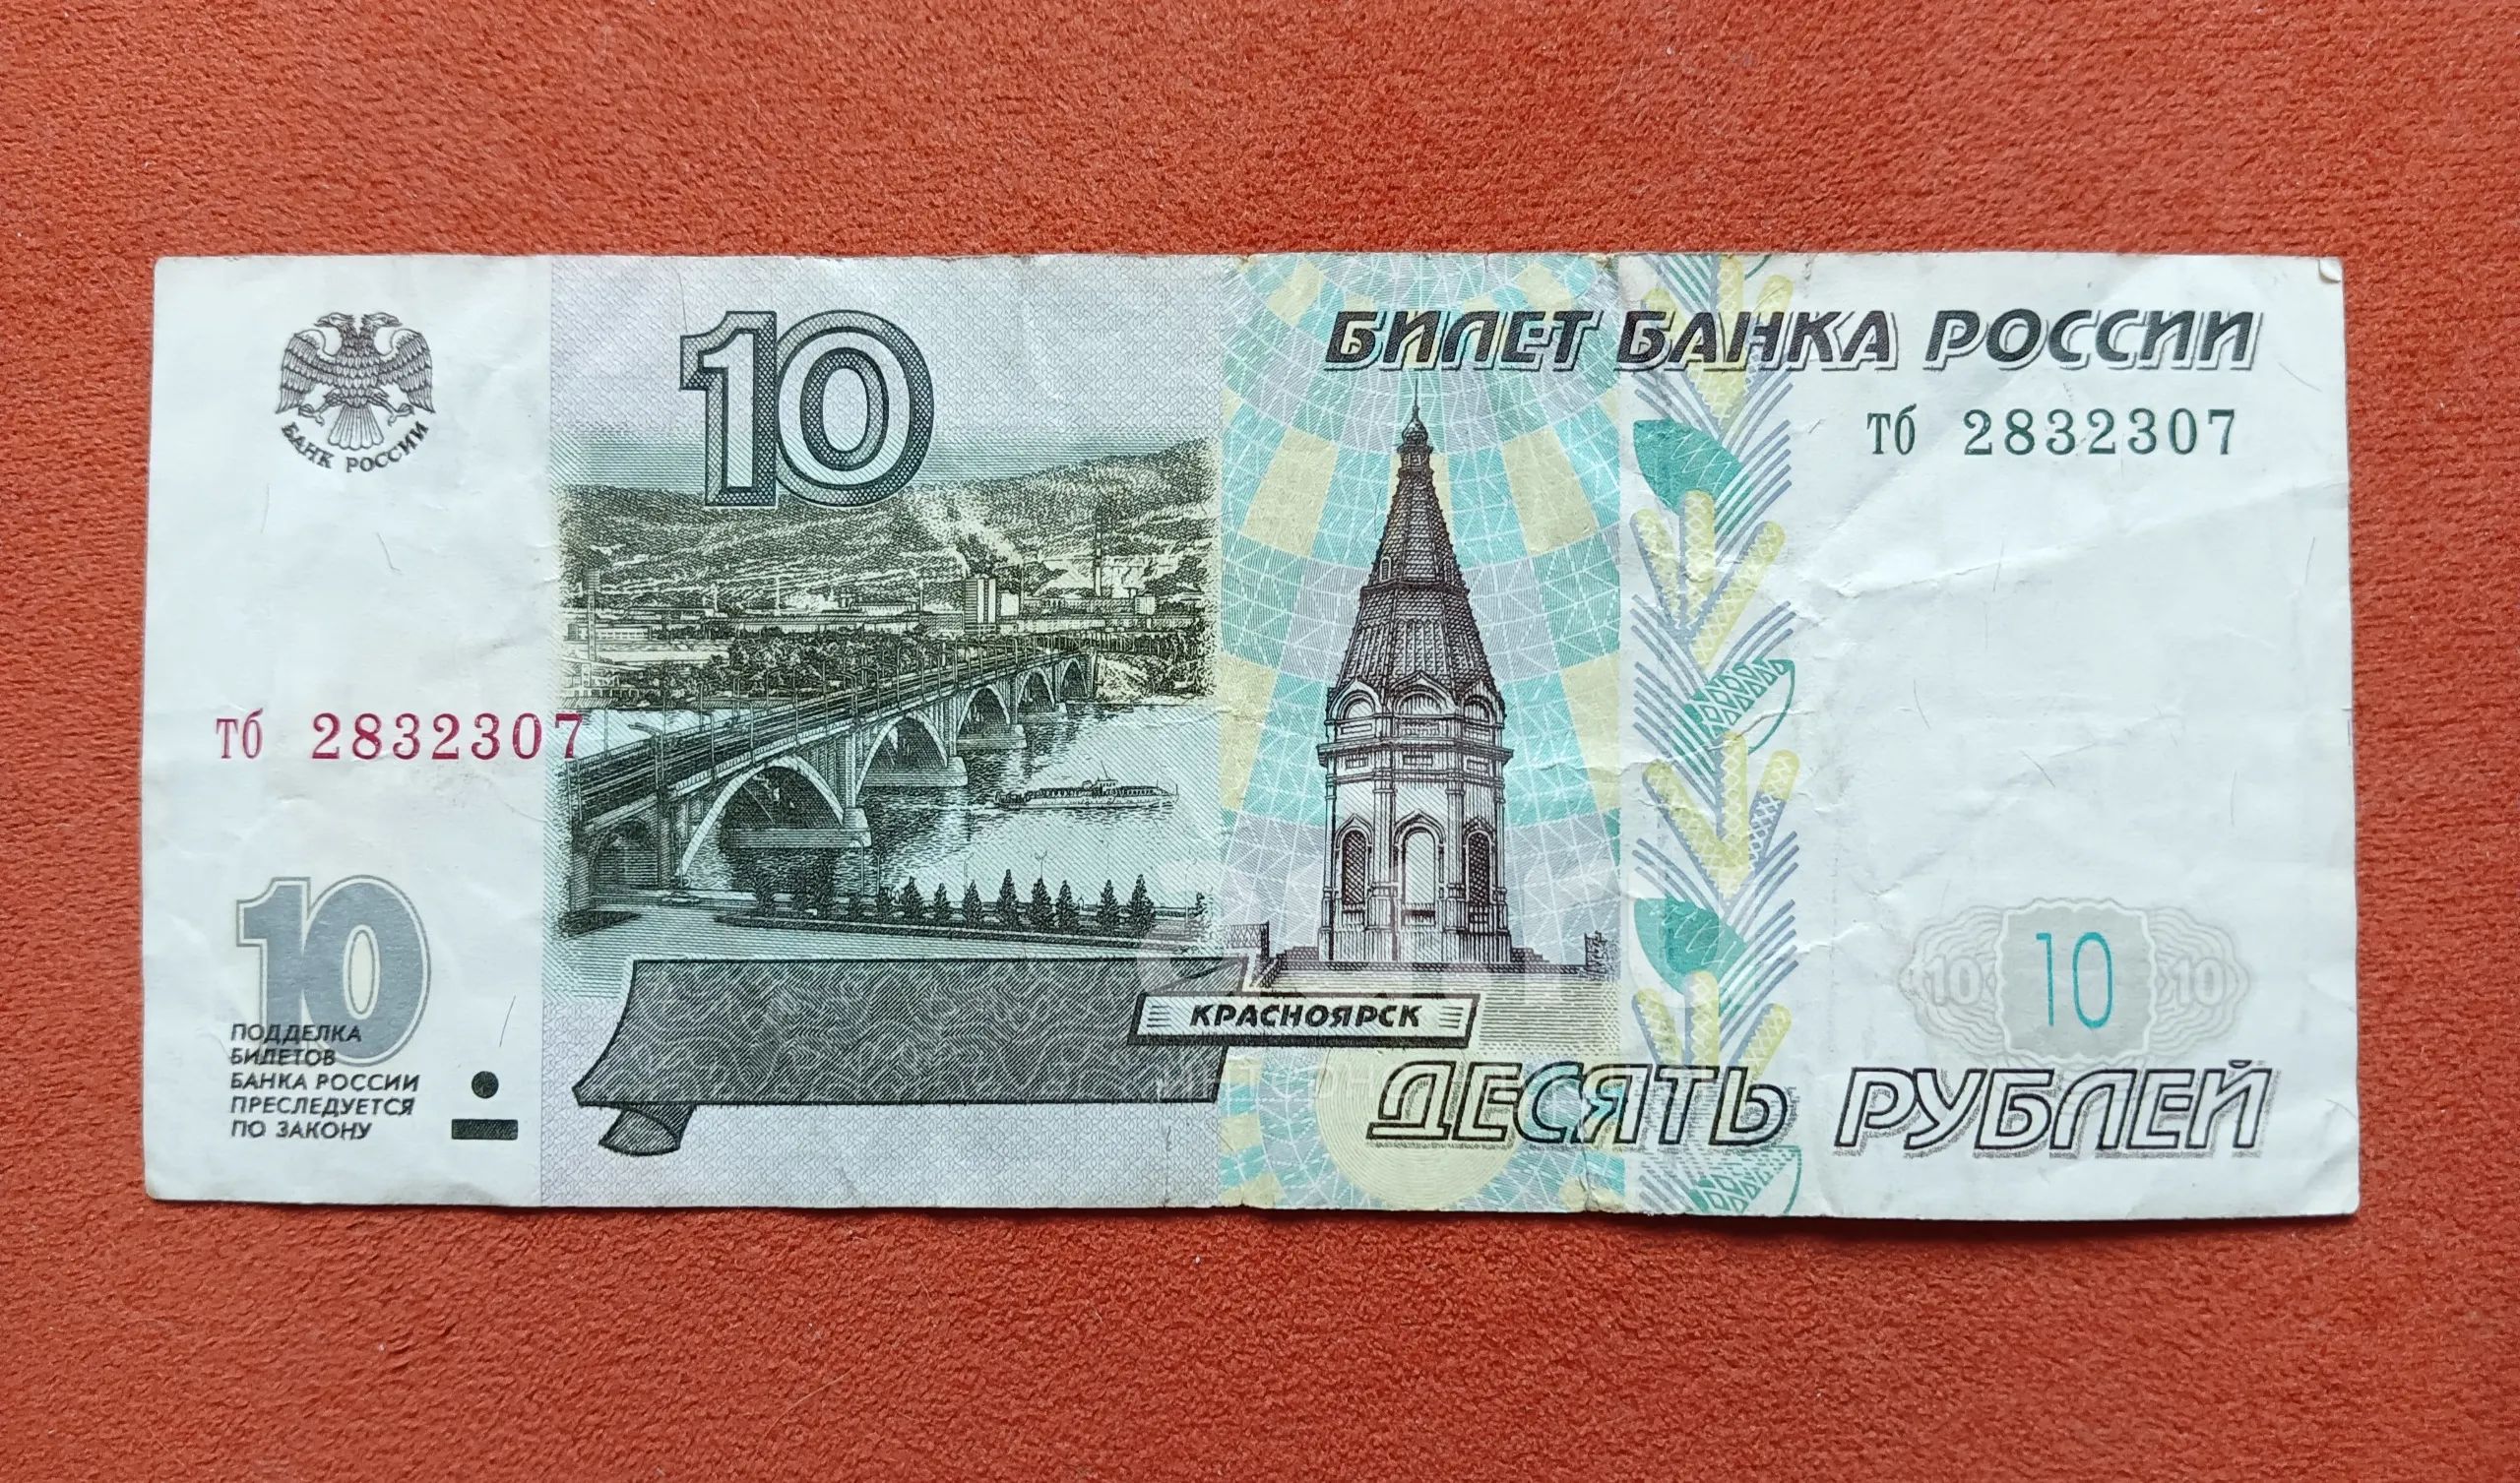 14 60 в рублях